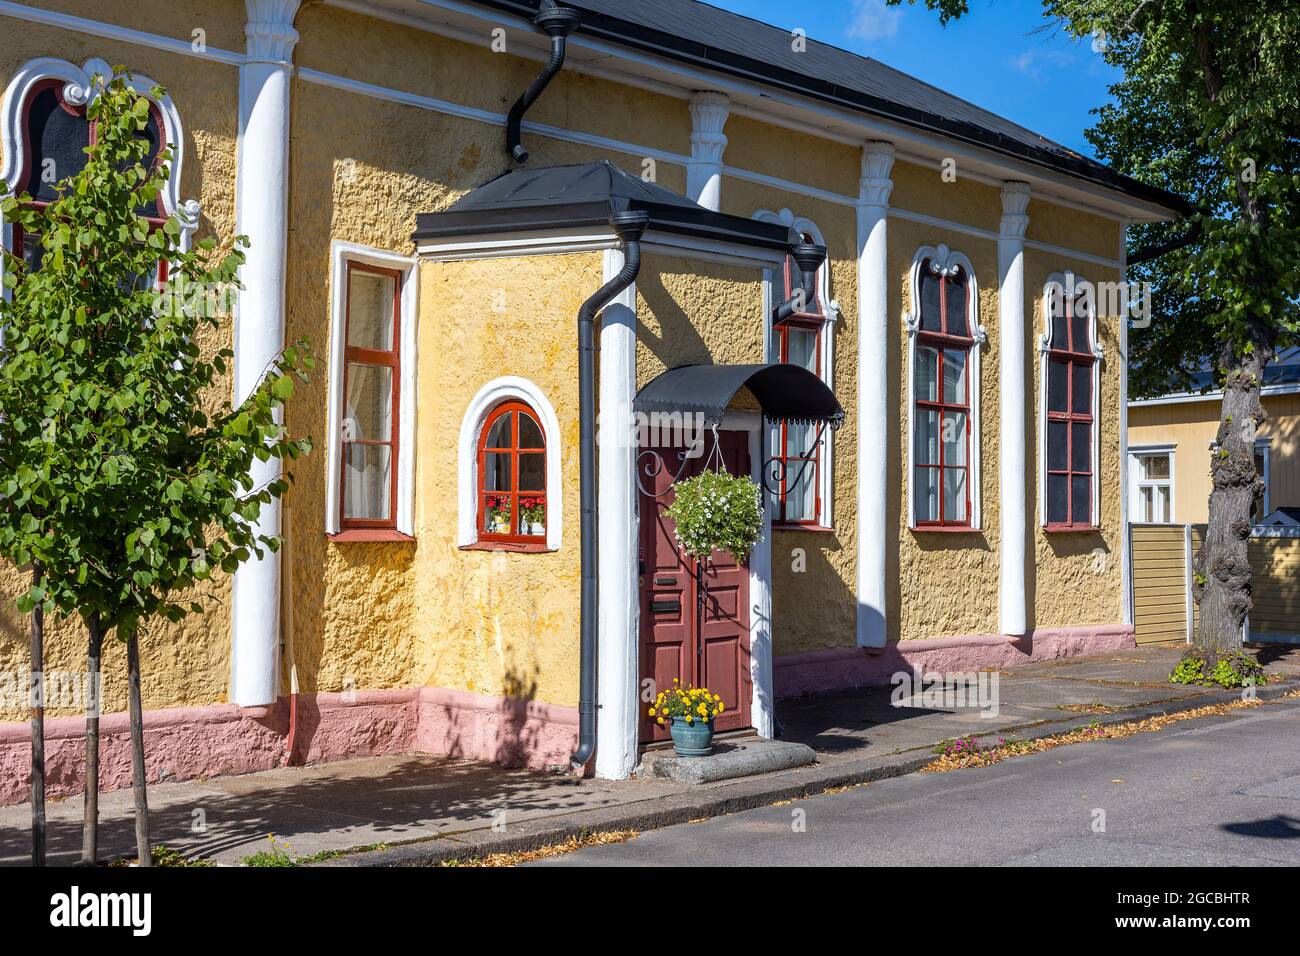 HAMINA, FINNLAND - 04-08-2021: Arvolammis Haus, ein Gebäude im Neorokoko-Stil in der Altstadt von Hamina, Finnland. Stockfoto